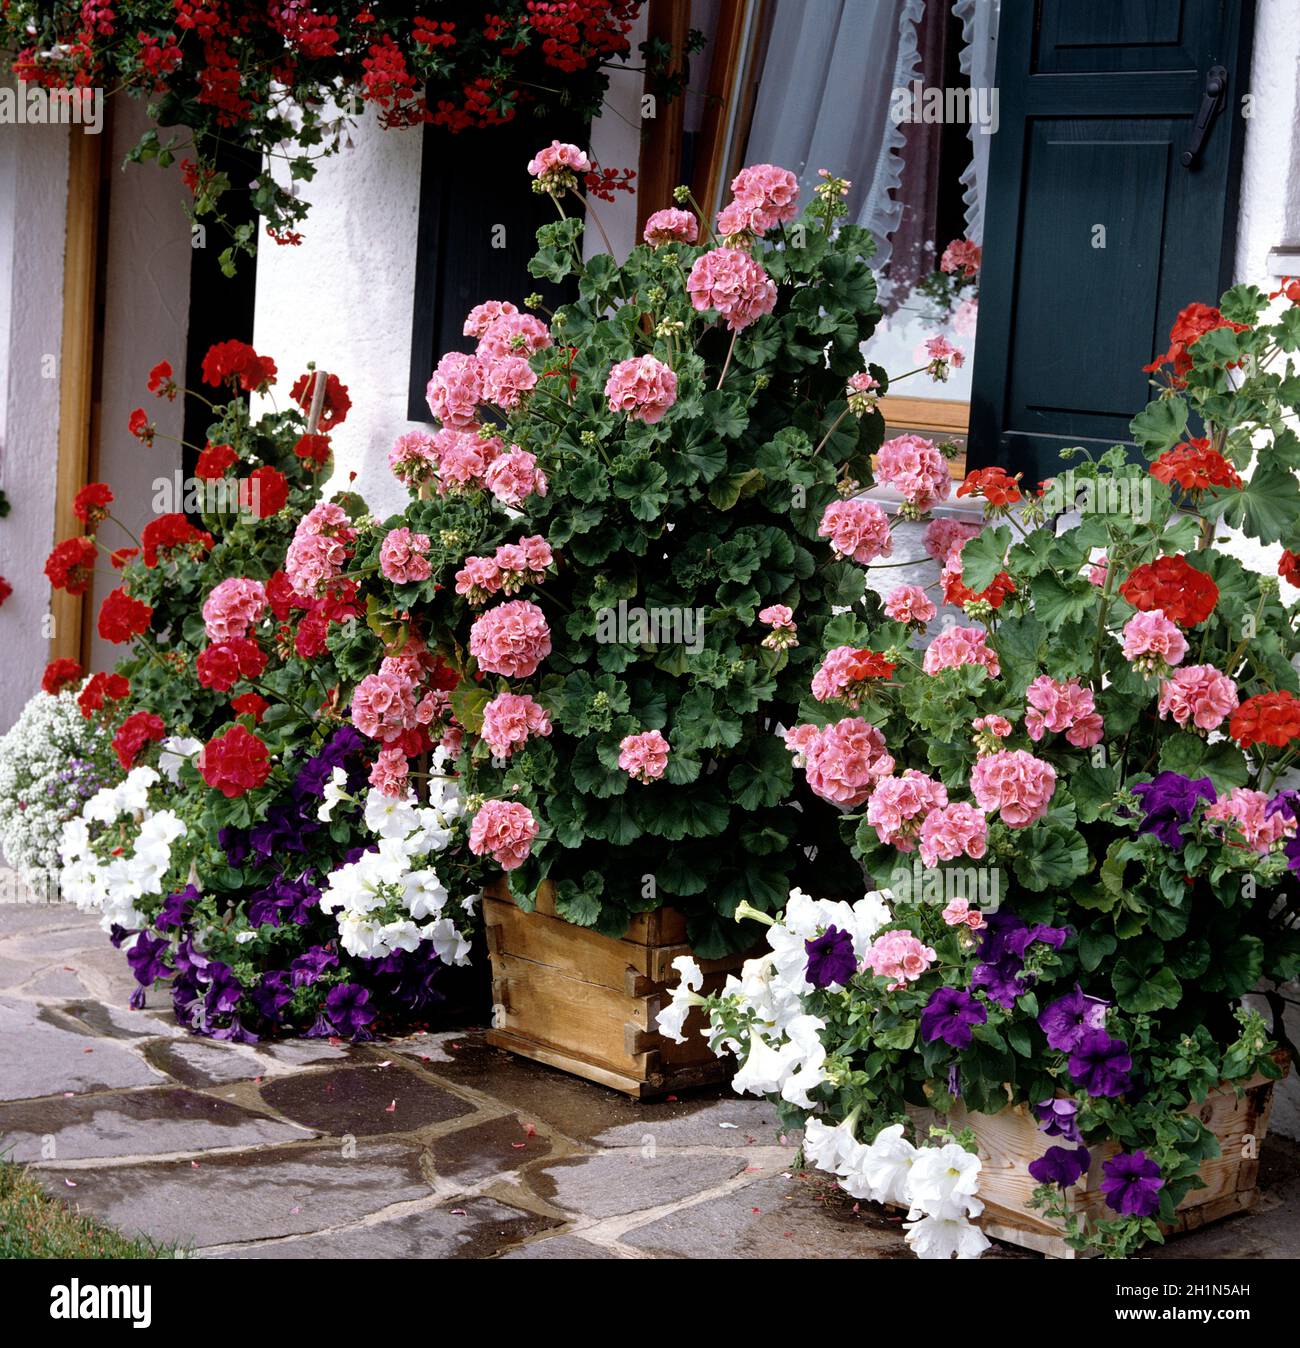 Balkonblumen, Blumen im Kasten, Petunie, Surfina, Bidens, Balkonblumen, Blumen auf Terrasse, Gartenblumen, Kübelpflanzen Stock Photo